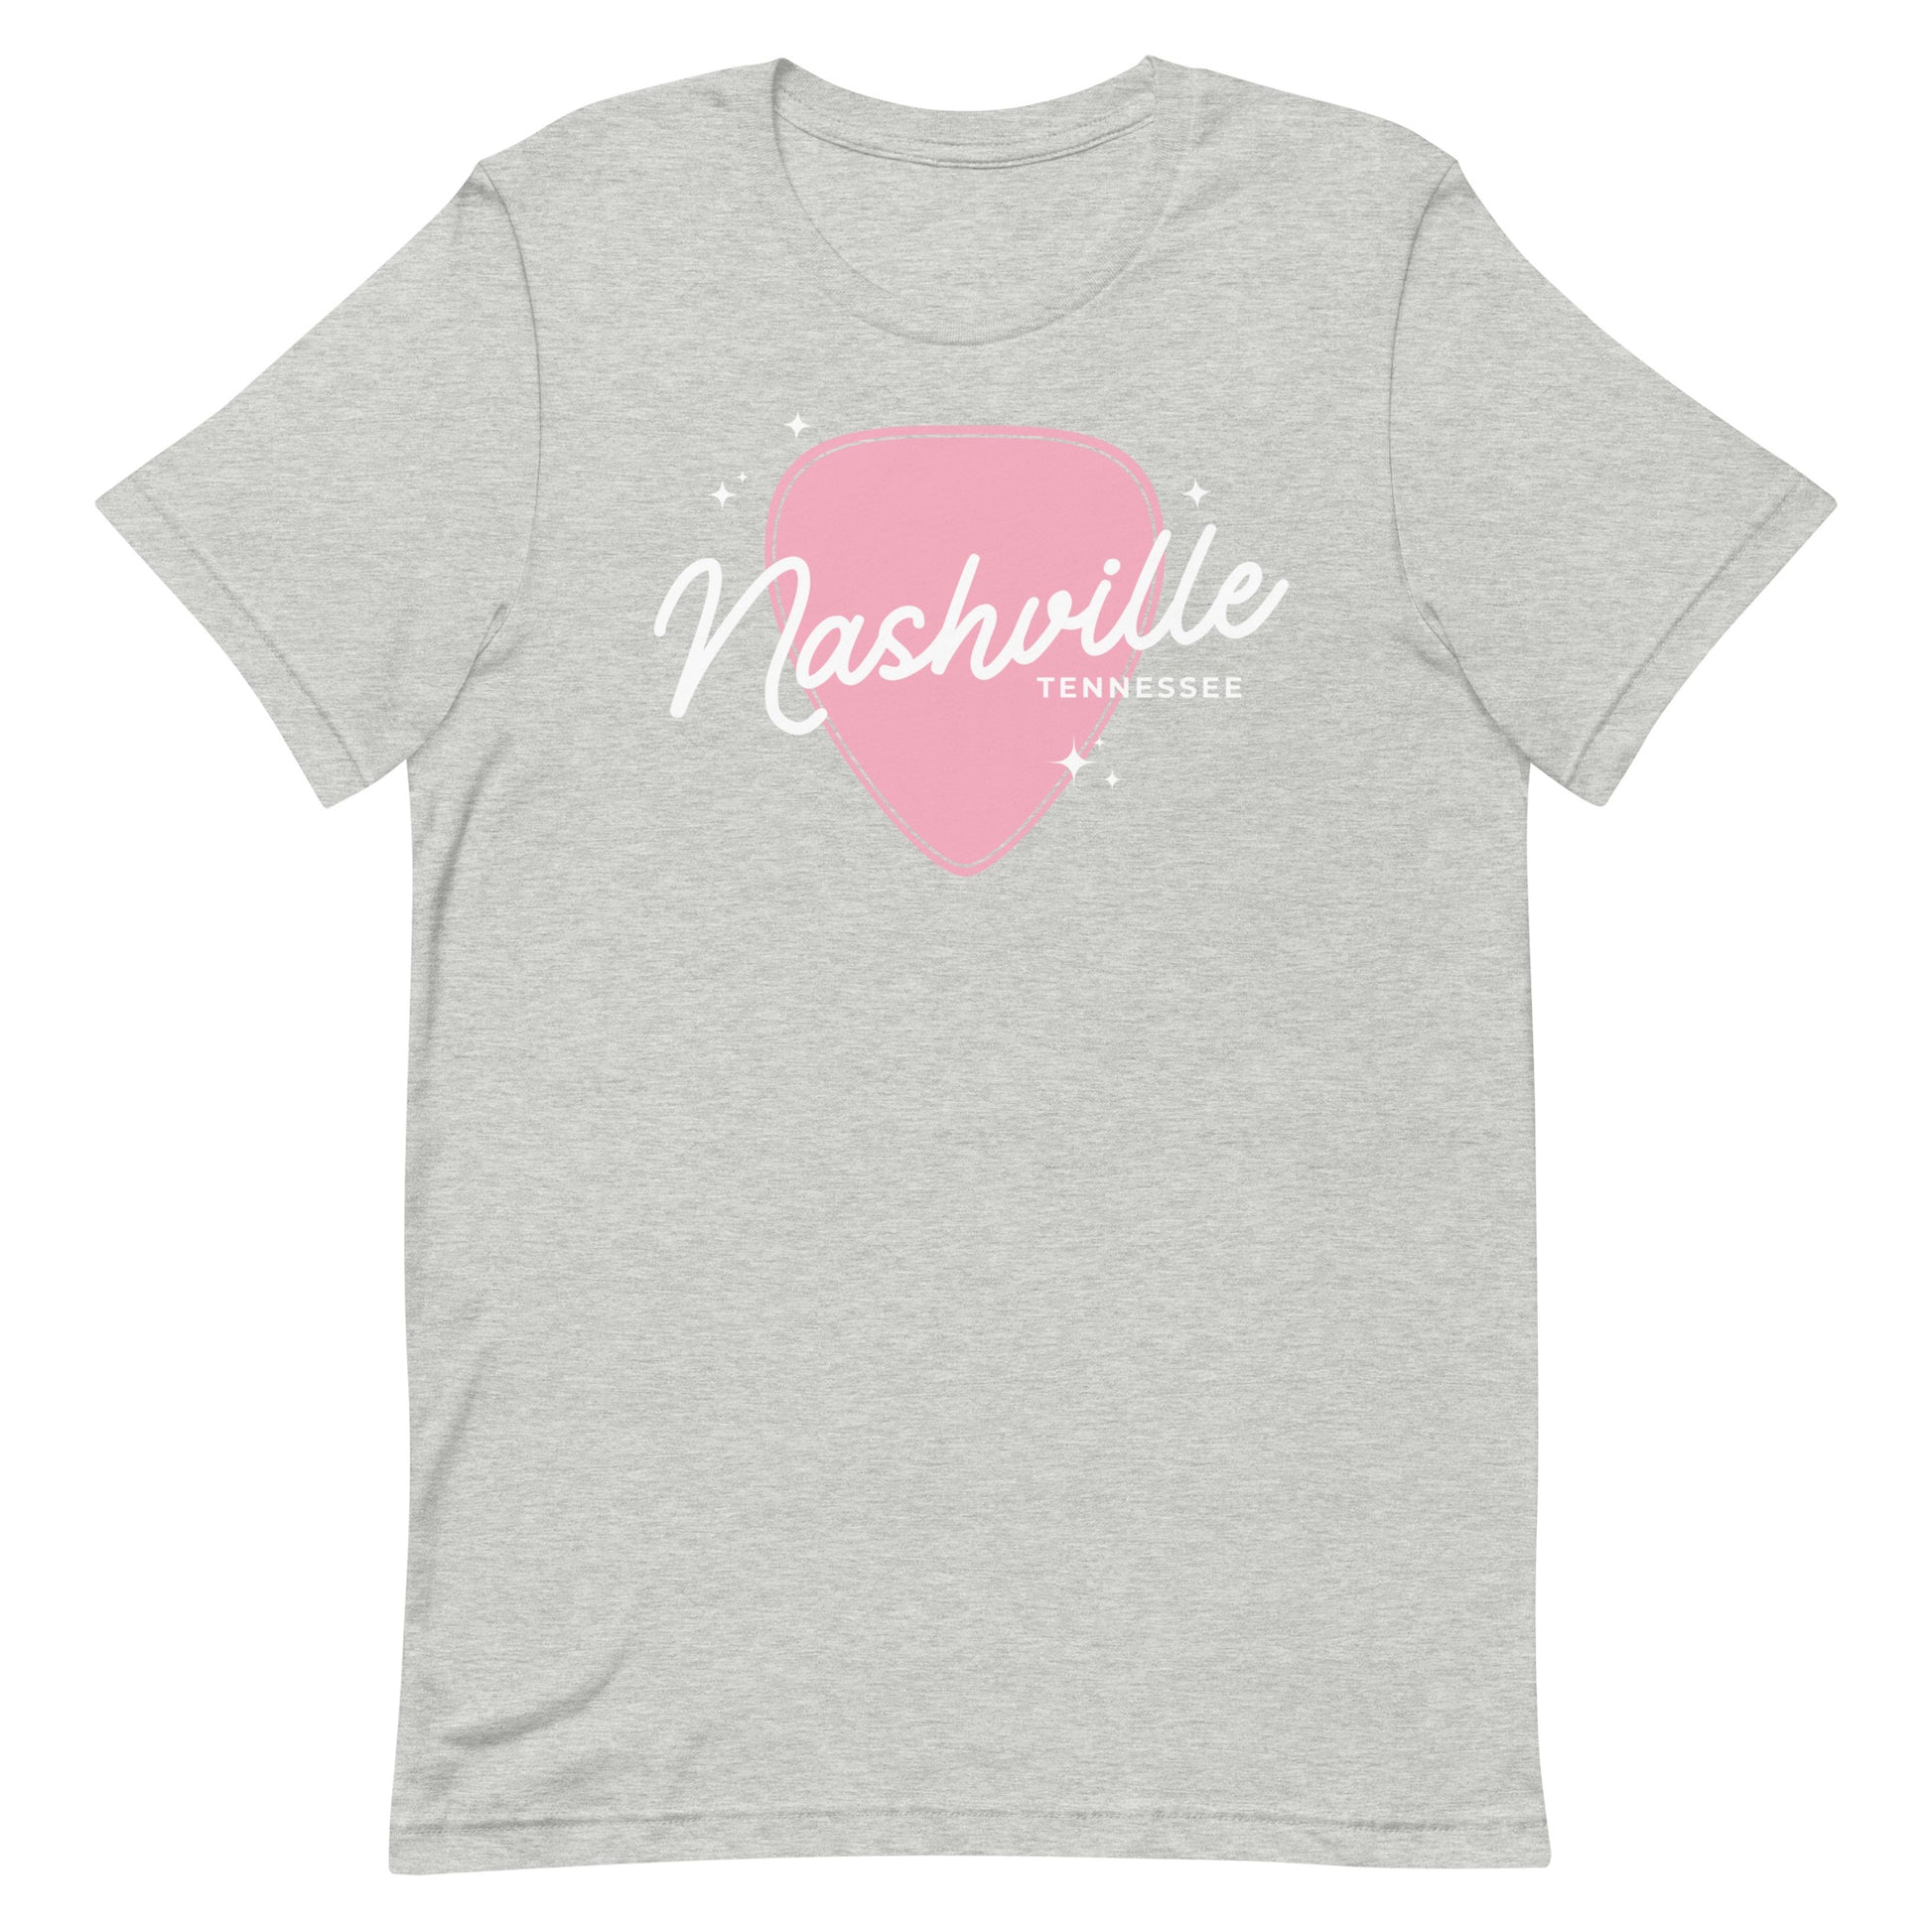 Nashville t-shirt for women